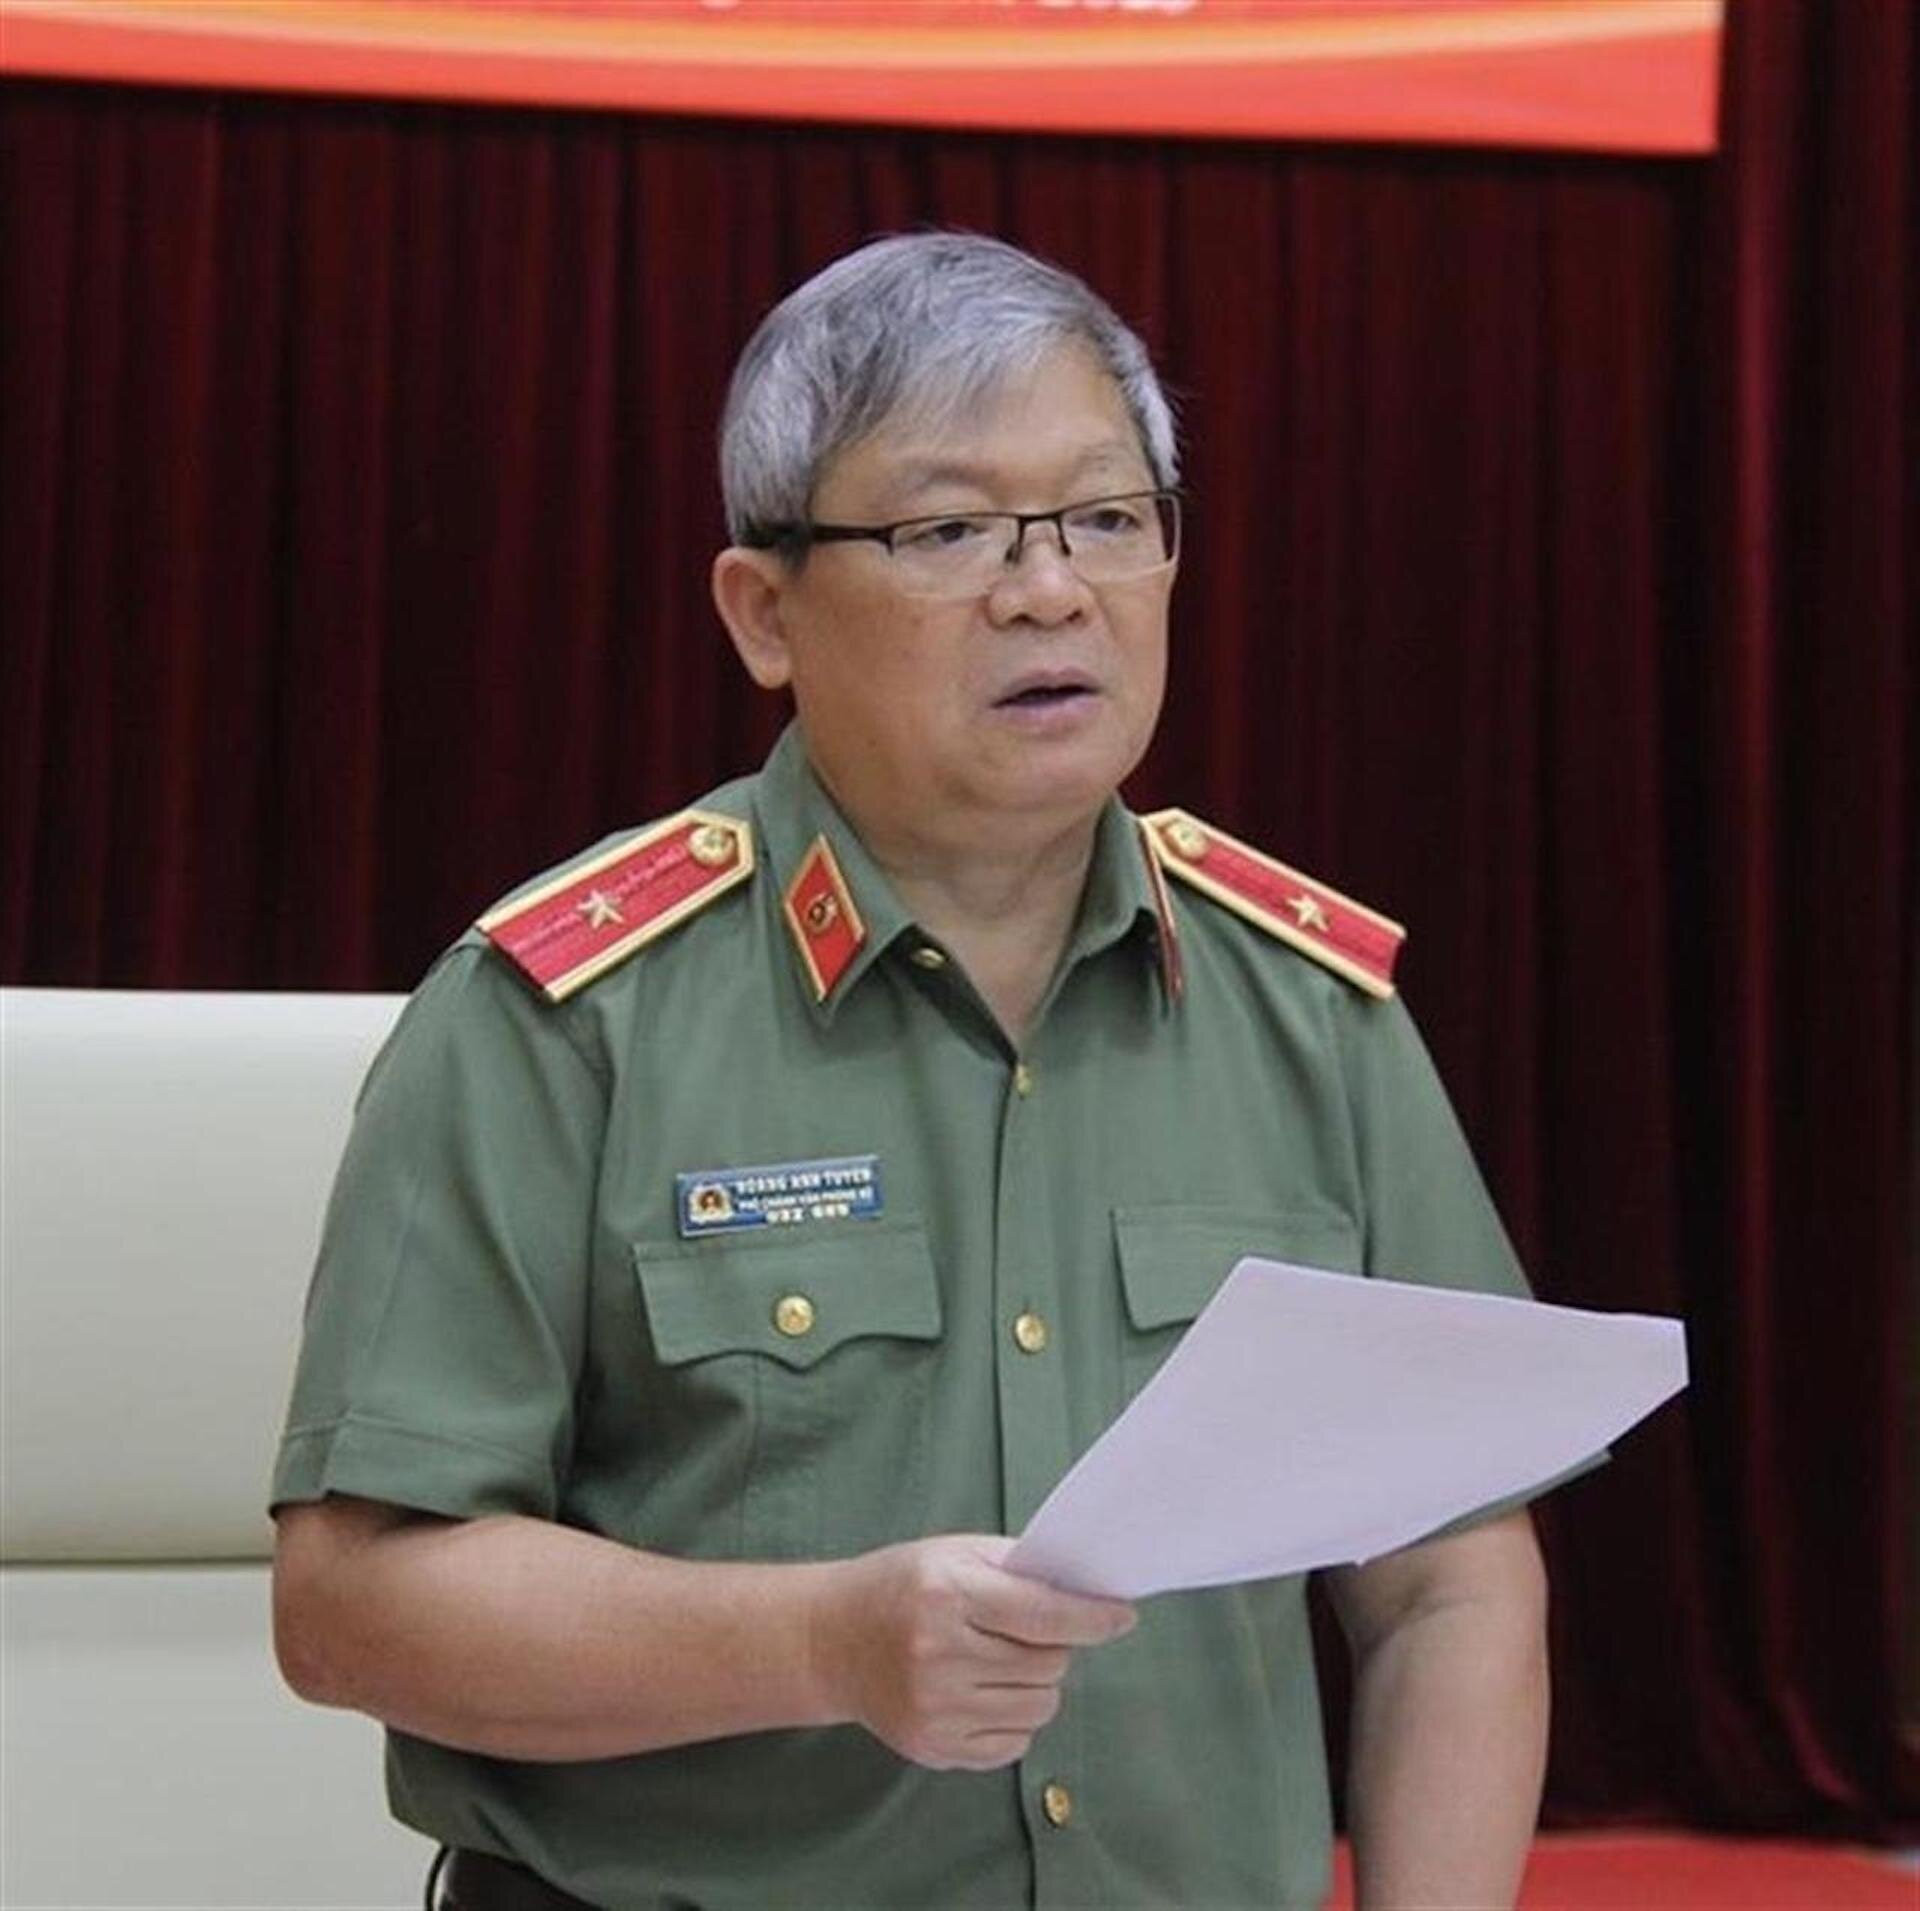 Thiếu tướng Hoàng Anh Tuyên được giao nhiệm vụ làm Người phát ngôn Bộ Công an.